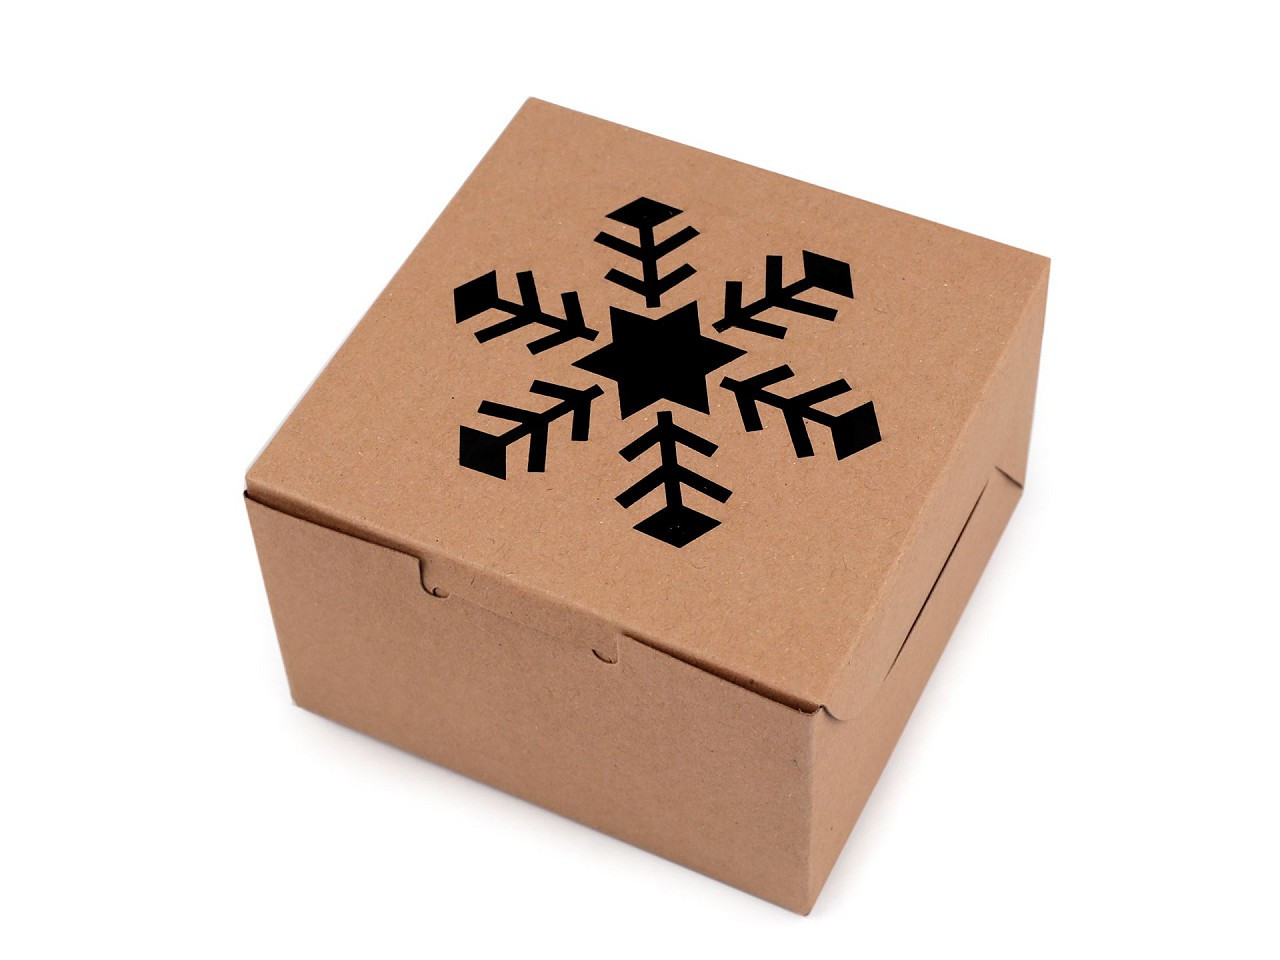 Vánoční papírová krabička s průhledem stromeček, vločka, zvonek, barva 2 hnědá přírodní vločka